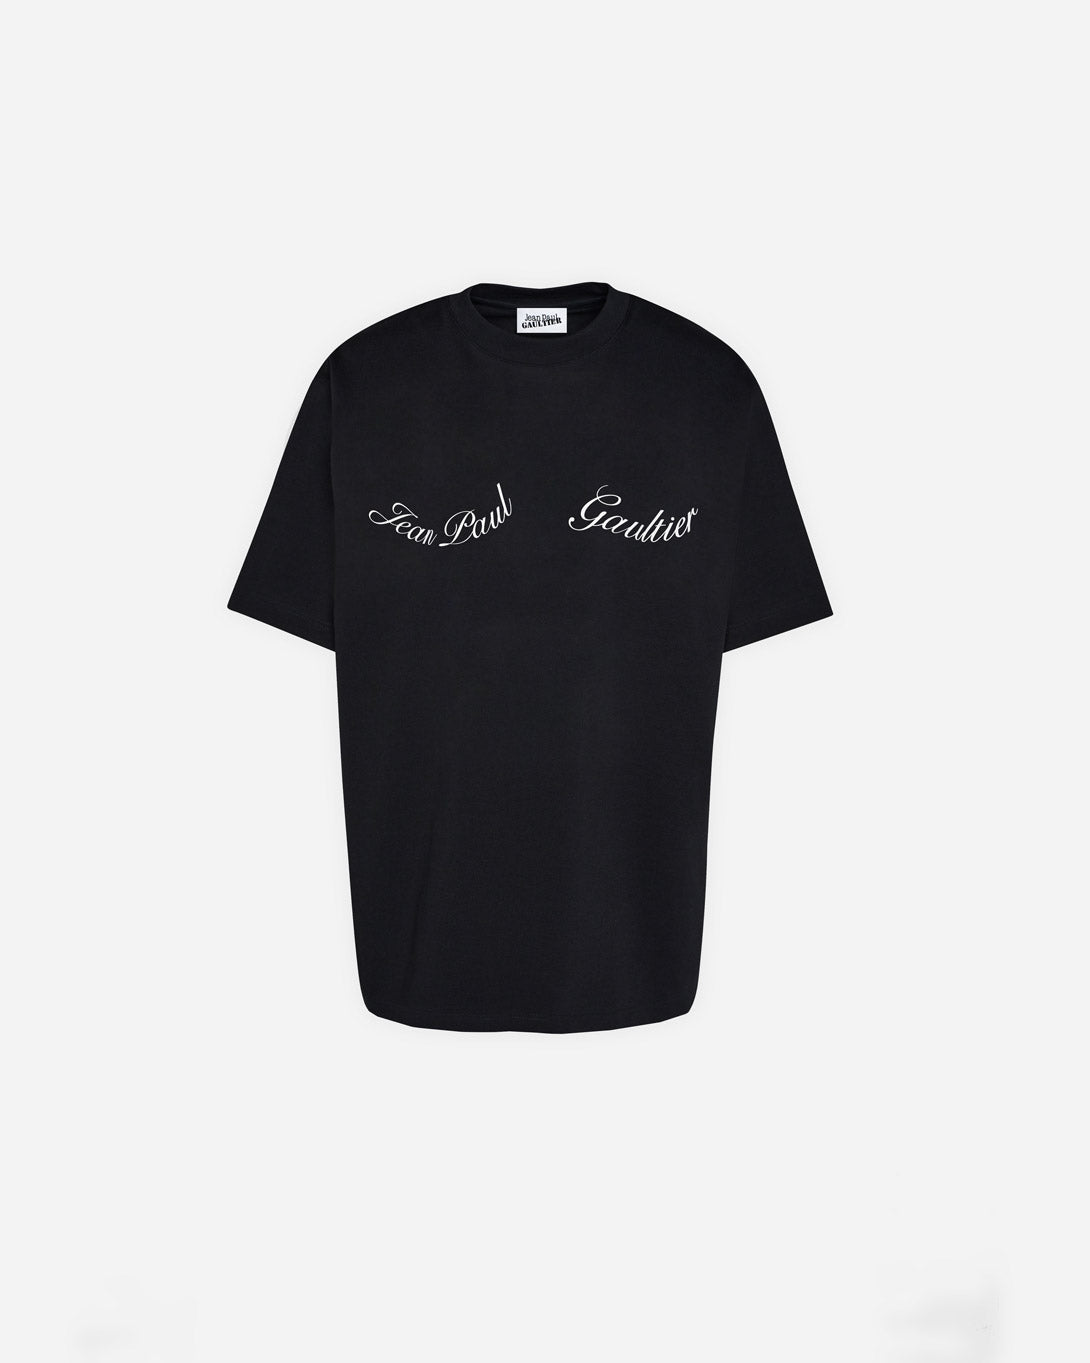 Crewneck Cotton Oversize Tee-Shirt With "Jean Paul Gaultier" Detail - Tops - Jean Paul Gaultier - Elevastor